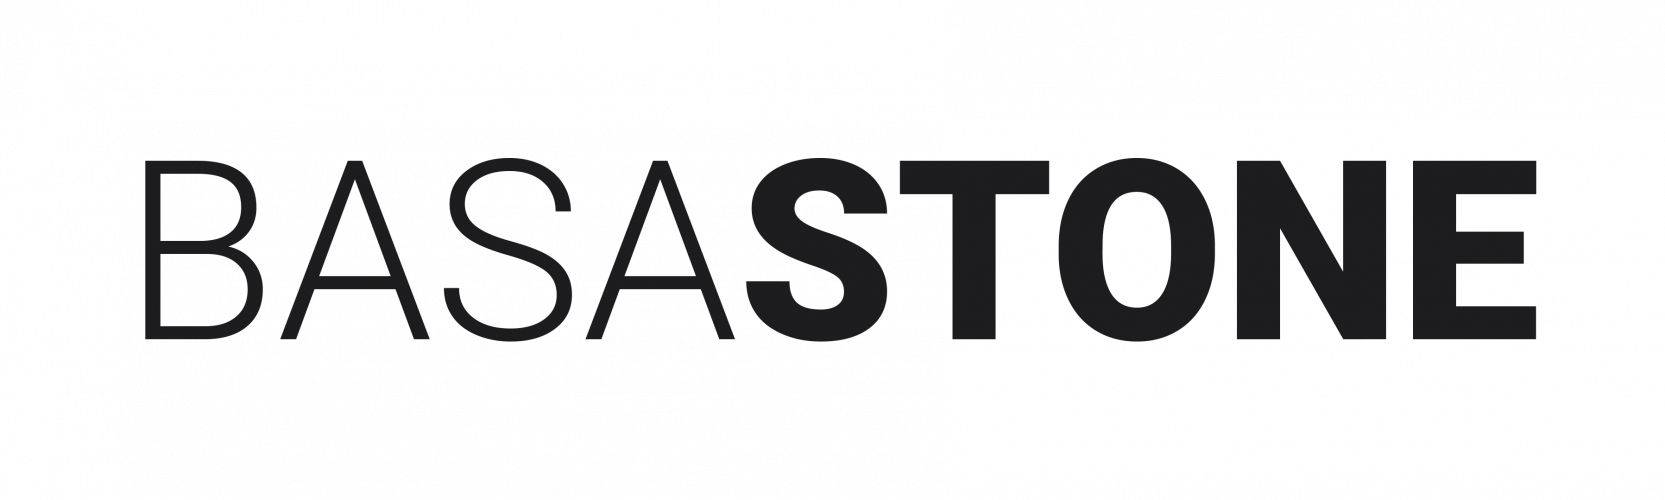 BasaStone.ro